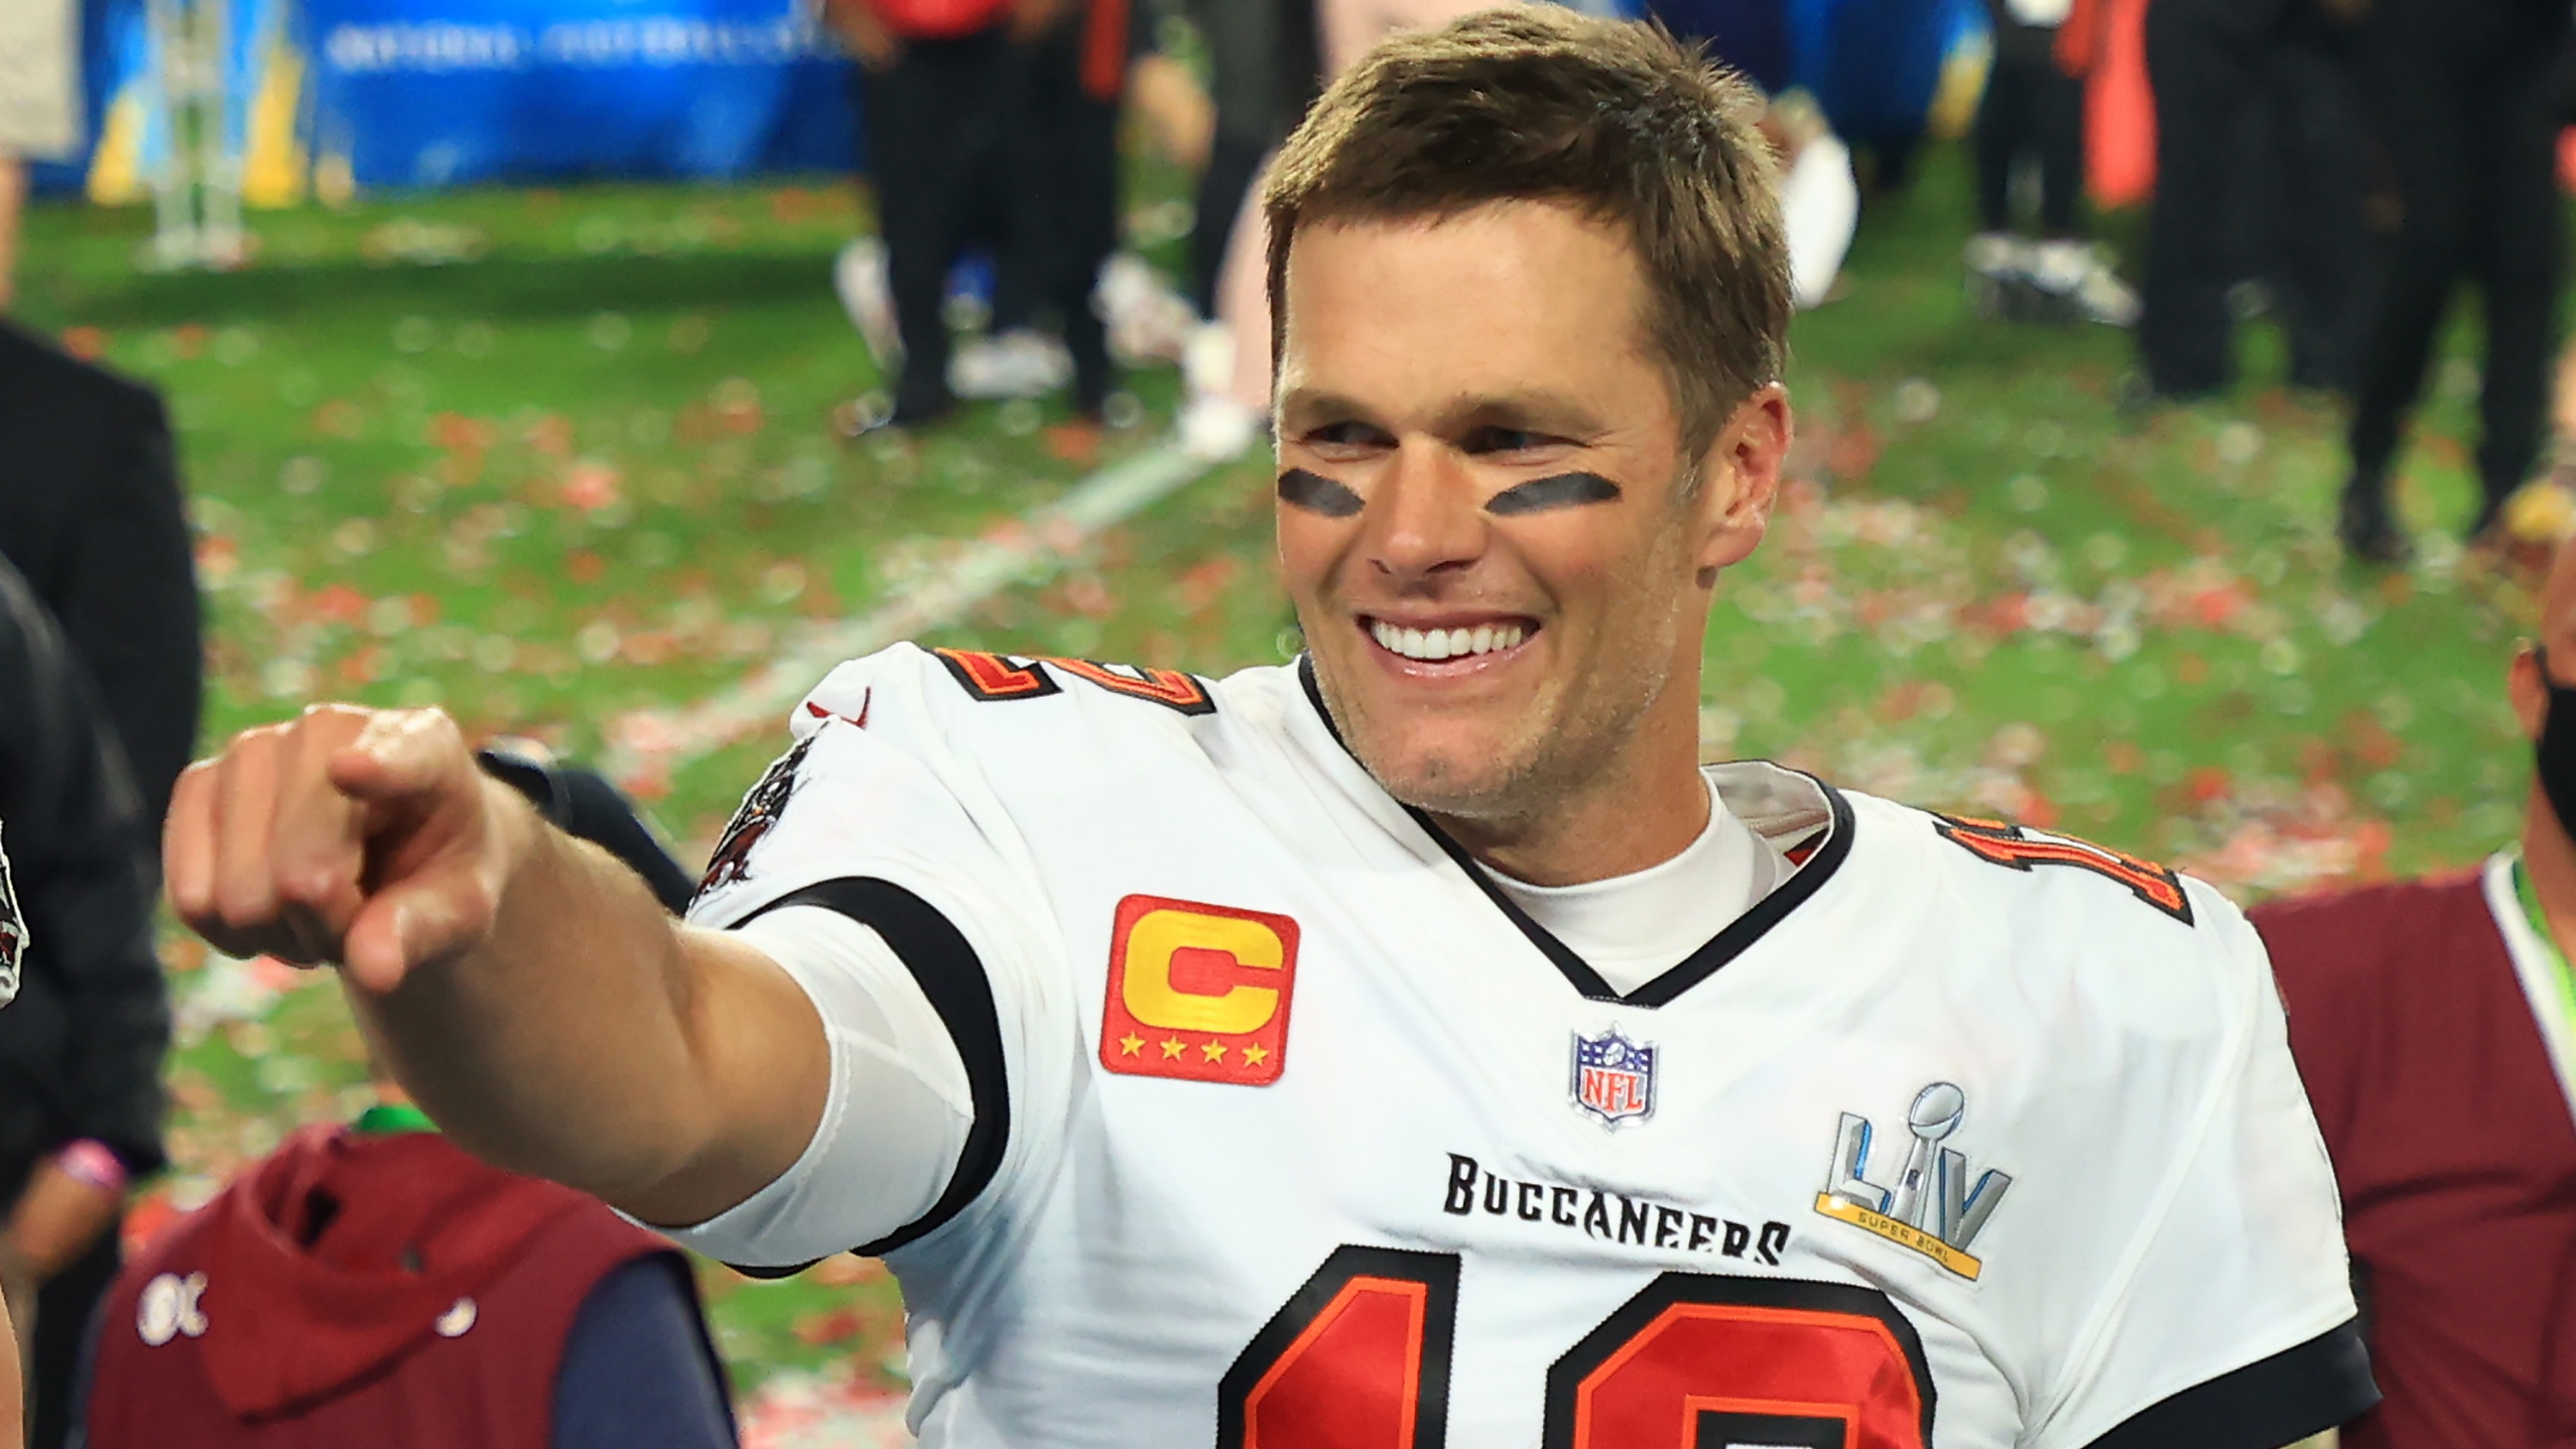 Bolsa Avanzado empeñar Super Bowl: El emperador Tom Brady | Deportes | EL PAÍS